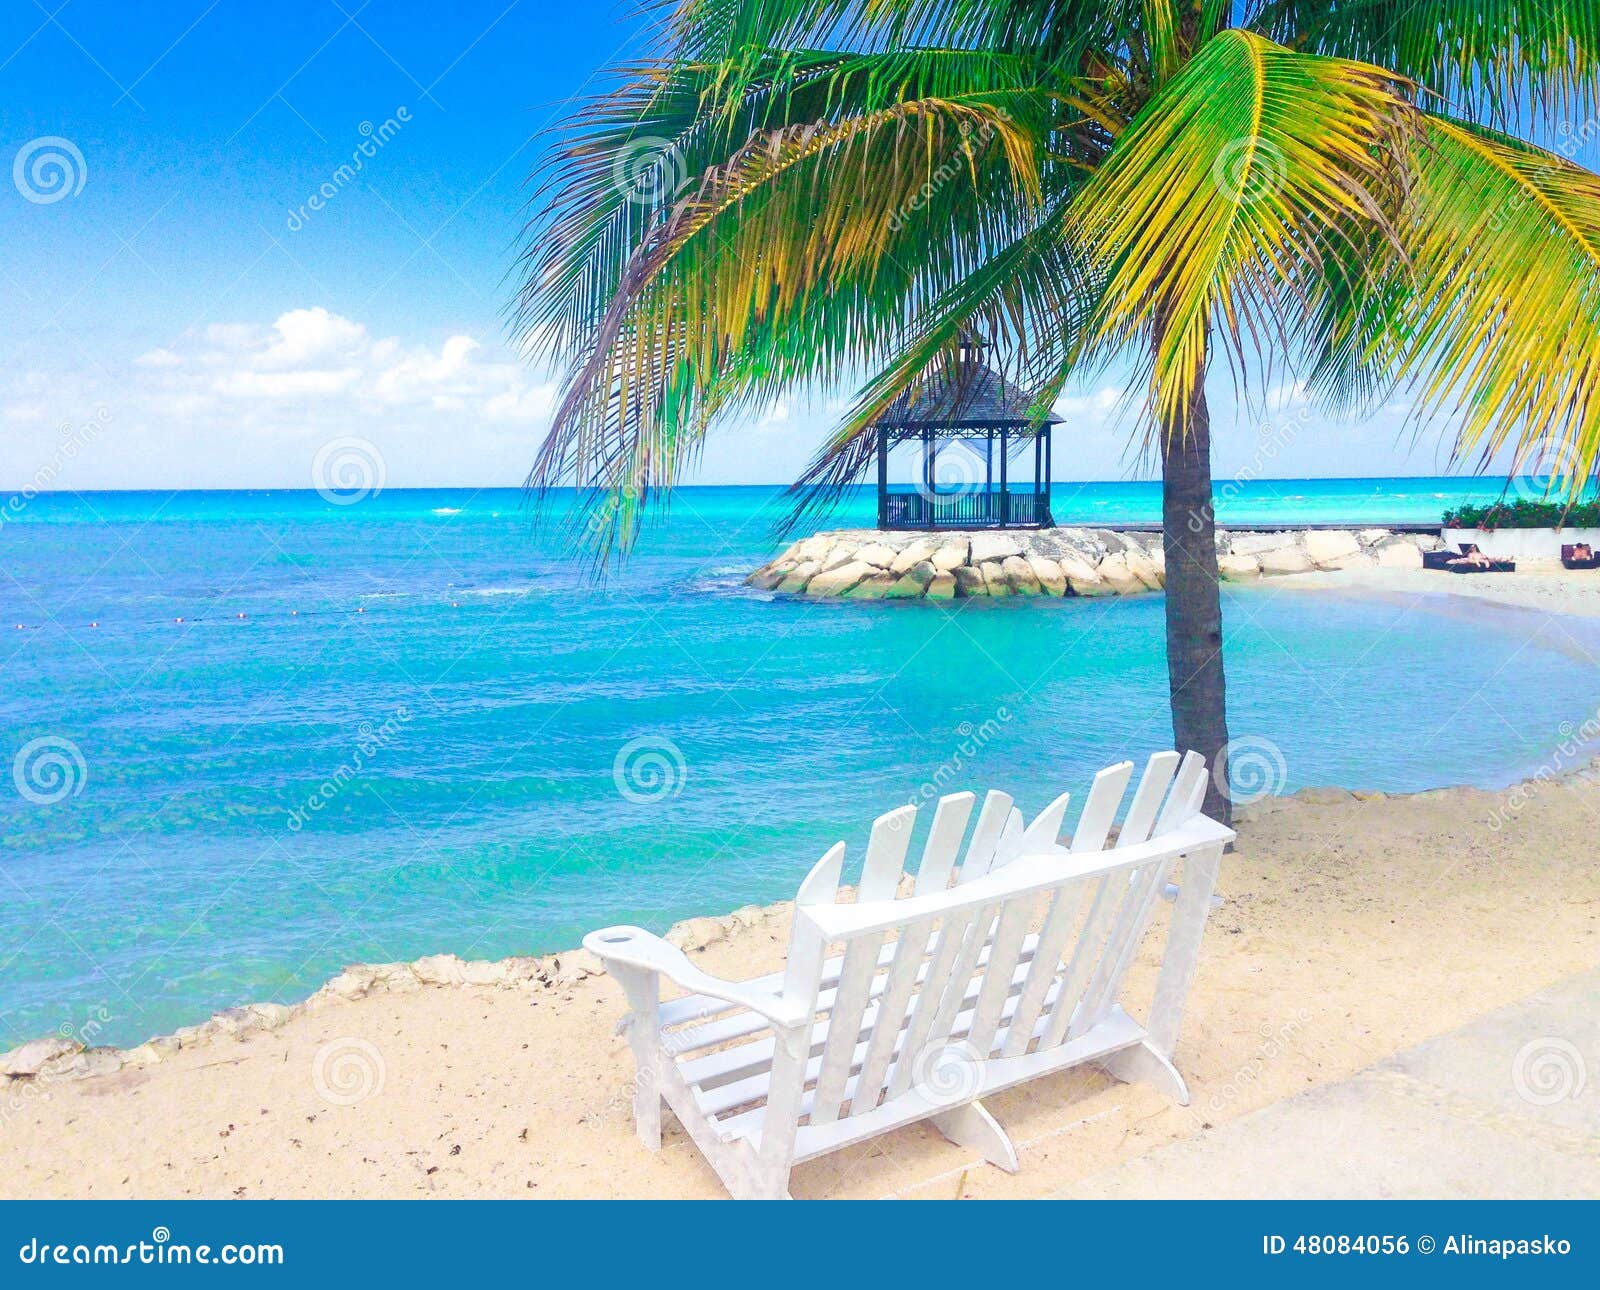 蒙特哥贝 牙买加库存照片 图片包括有掌上型计算机 结构树 小船 热带 游泳 岩石 阳光